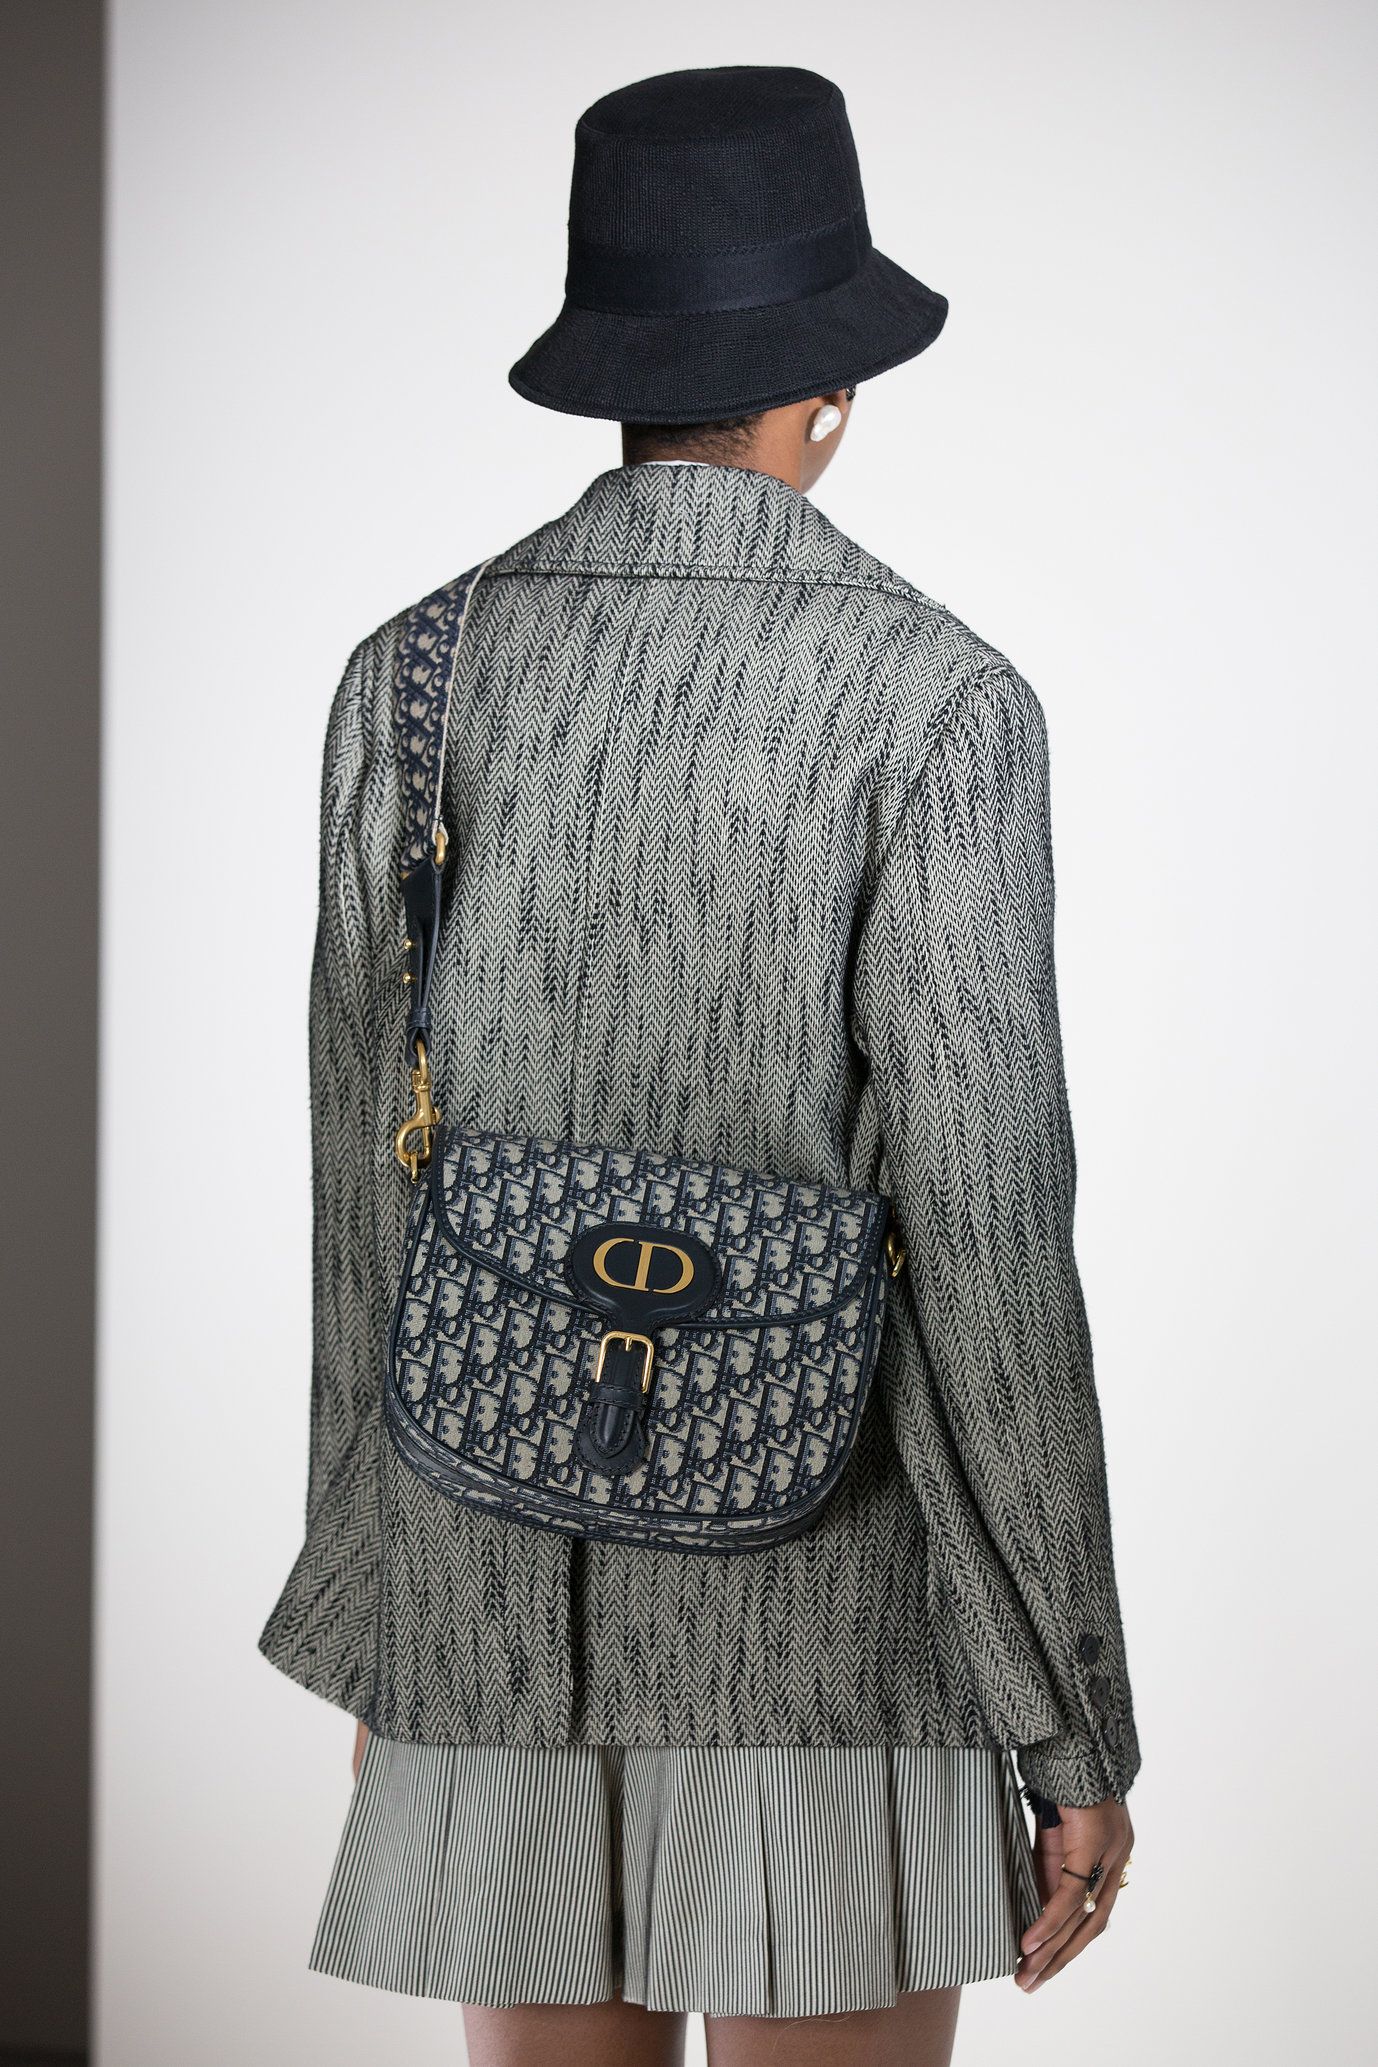 Dior Bobby Bag  Handbags for Women  DIOR US